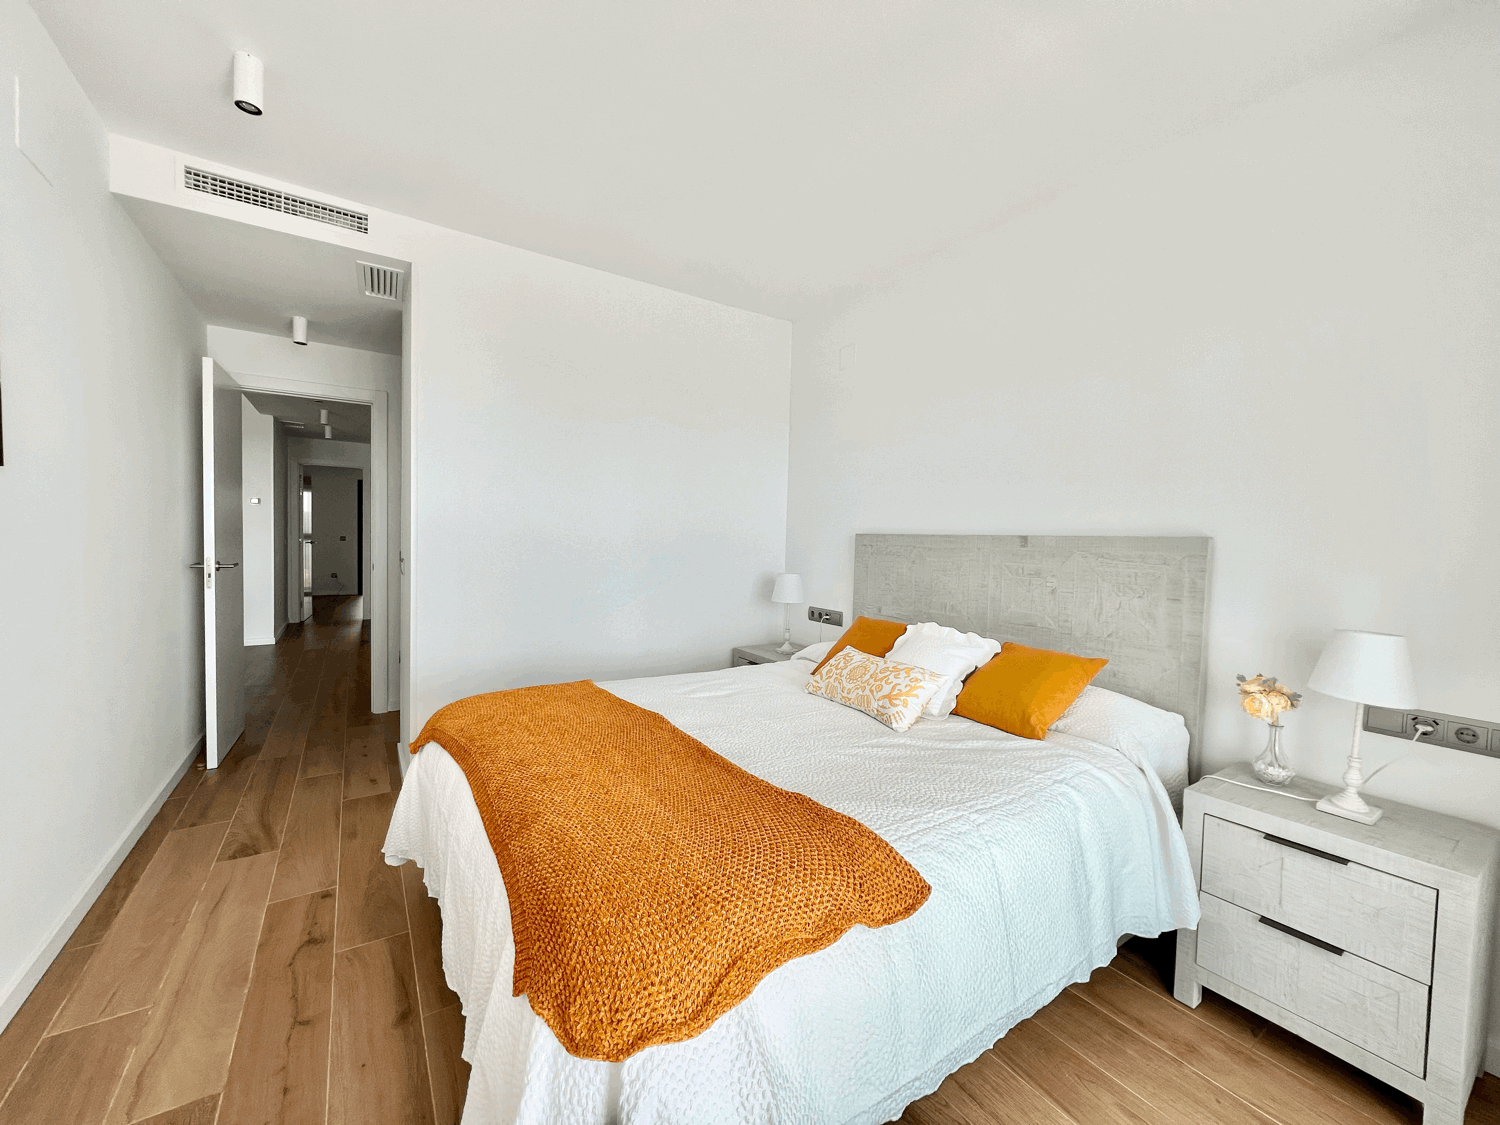 Exclusivo apartamento de dos dormitorios en primera linea de playa y campo de golf